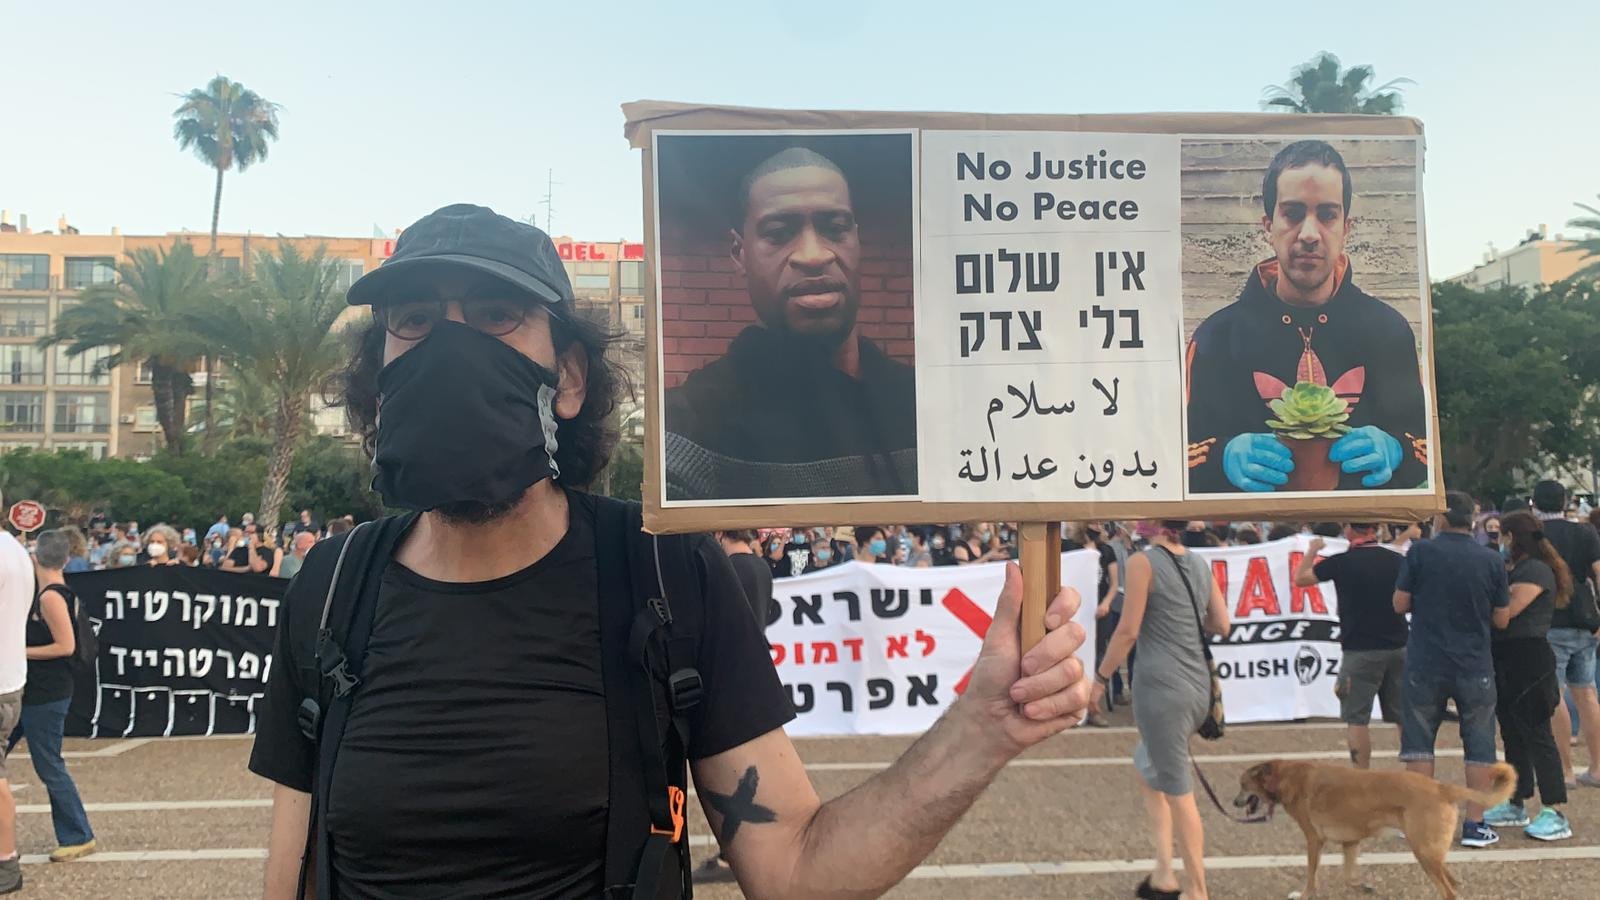 بمشاركة الآلاف، انطلاق التظاهرة في تل ابيب رفضًا للضم والاحتلال-24